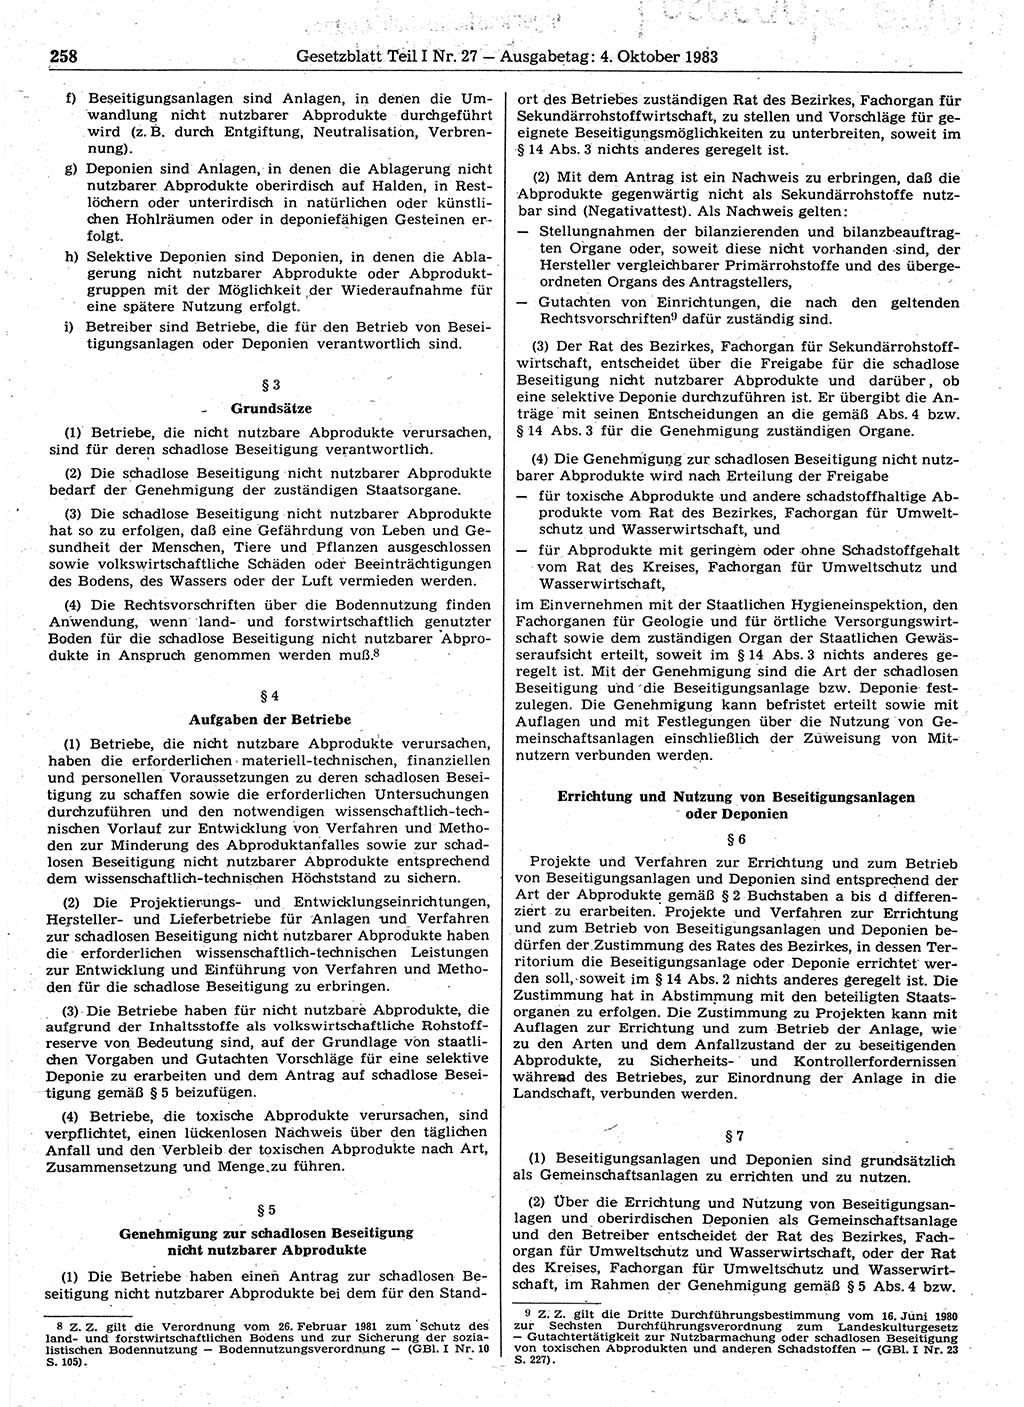 Gesetzblatt (GBl.) der Deutschen Demokratischen Republik (DDR) Teil Ⅰ 1983, Seite 258 (GBl. DDR Ⅰ 1983, S. 258)